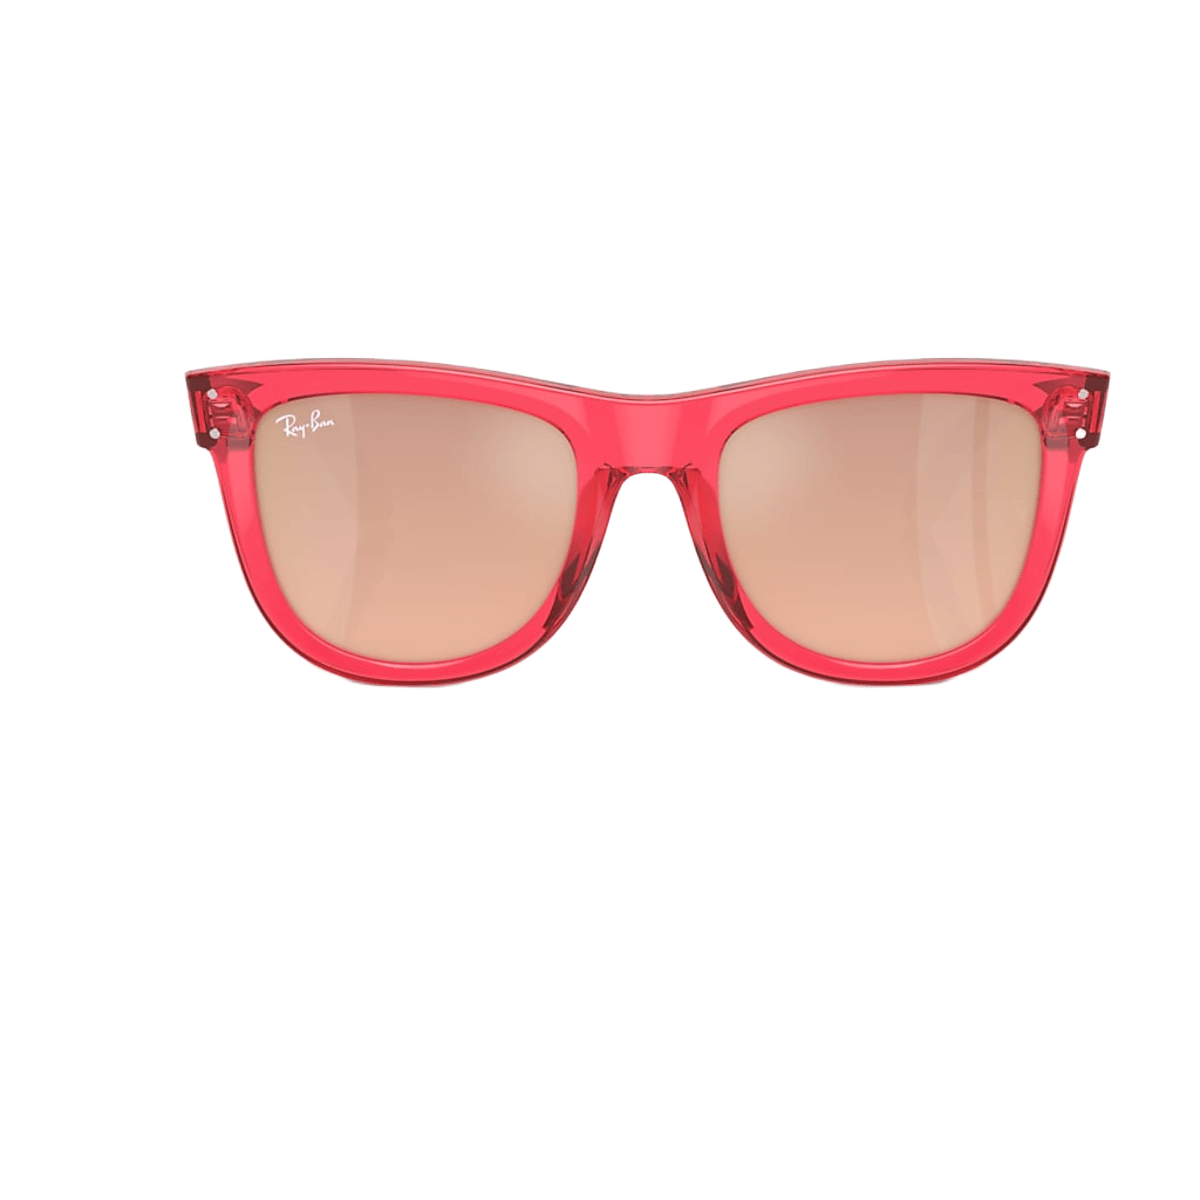 Men's Sunglasses | Warby Parker